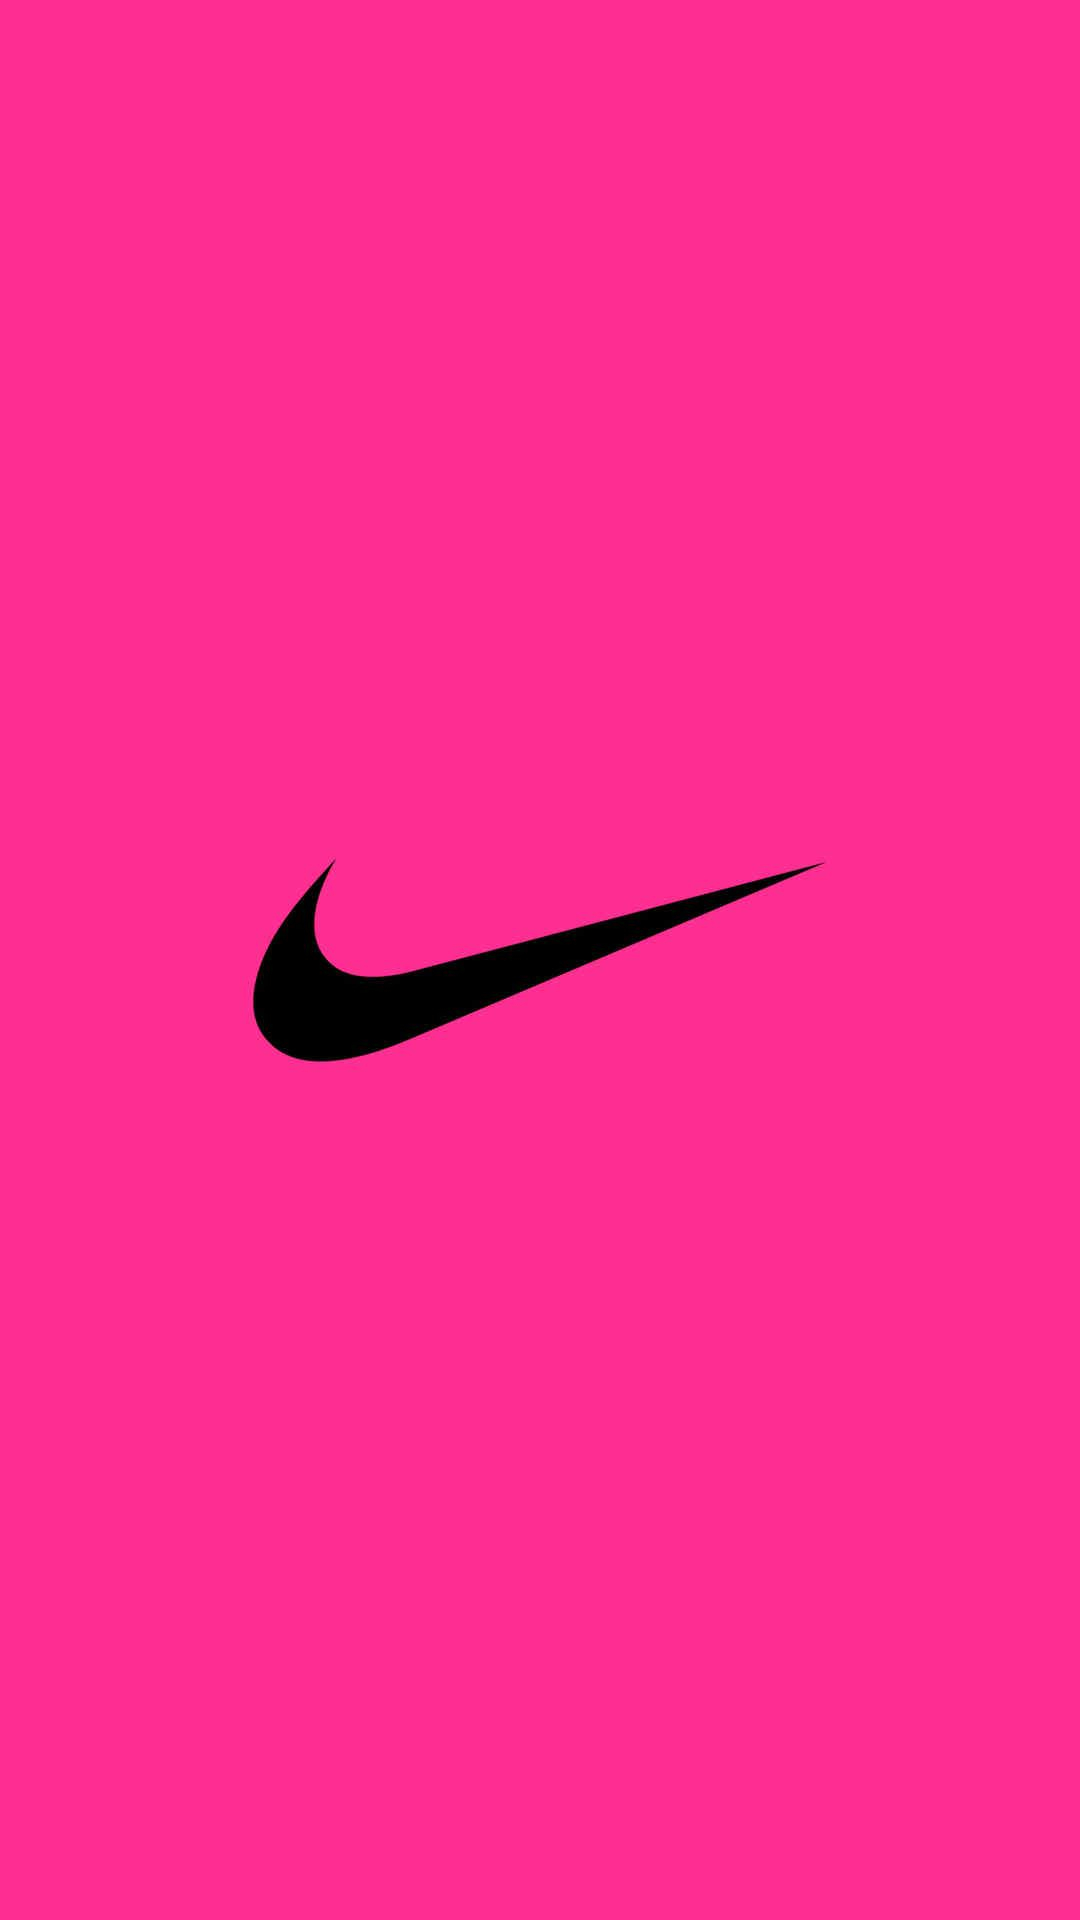 1080x1920 NIKE Logo iPhone Wallpaper | Pink nike wallpaper, Nike wallpaper, Nike logo wallpapers